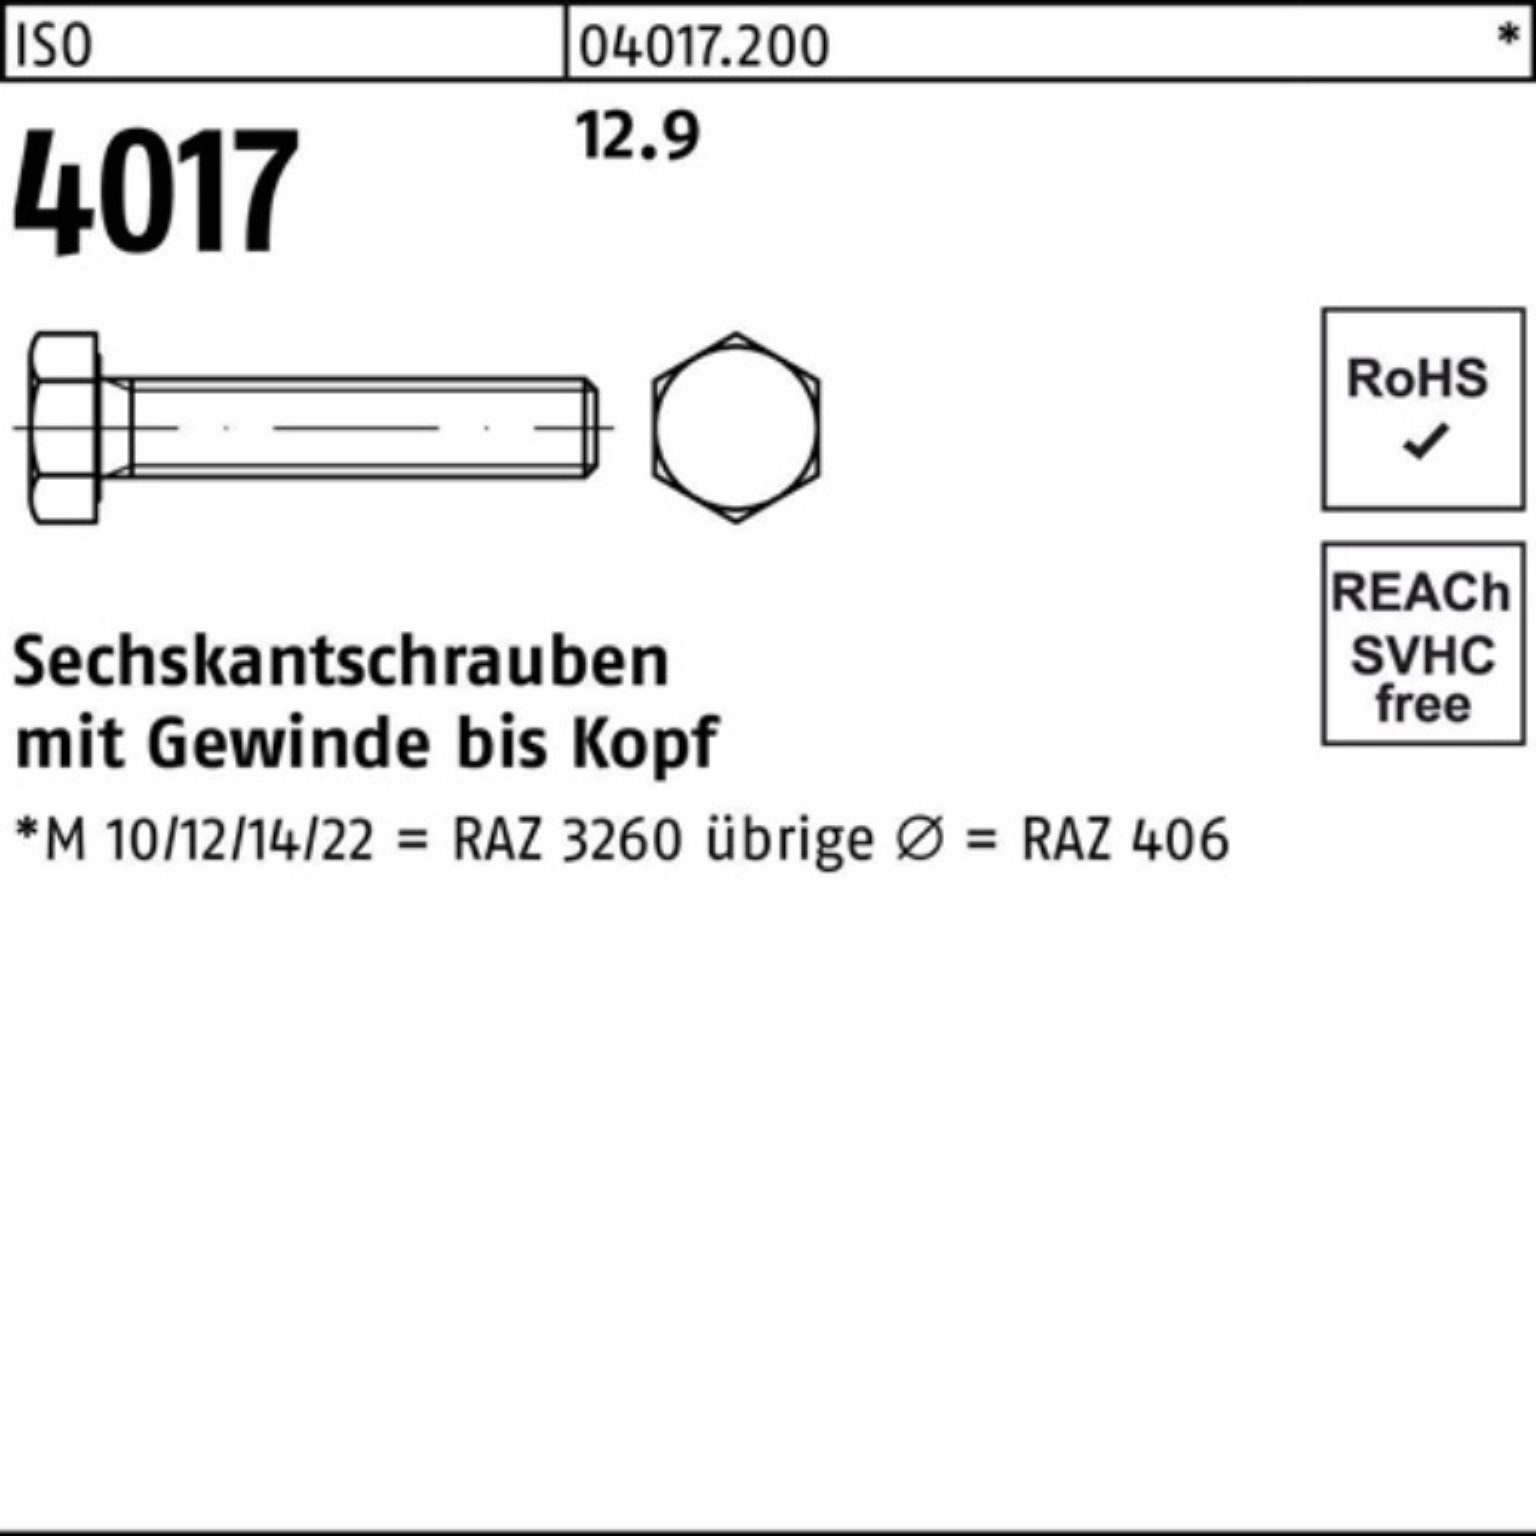 Bufab 60 ISO 4 ISO Sechskantschraube 4017 M10x 100 100er Pack Sechskantschraube VG 12.9 Stück